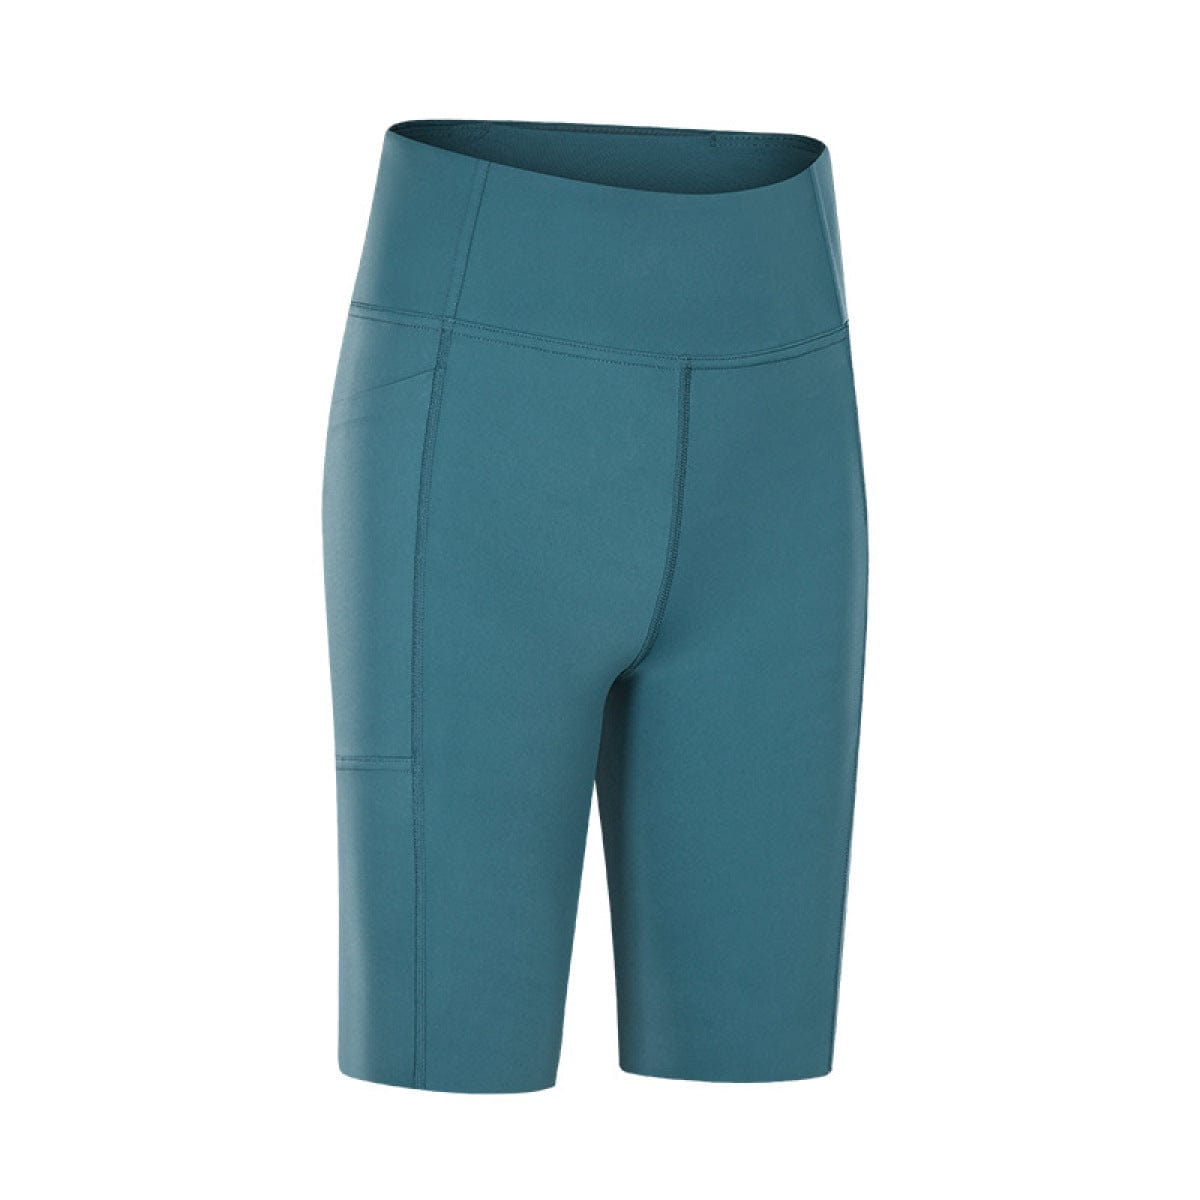 Solid Color Side Pockets Yoga Shorts Blue